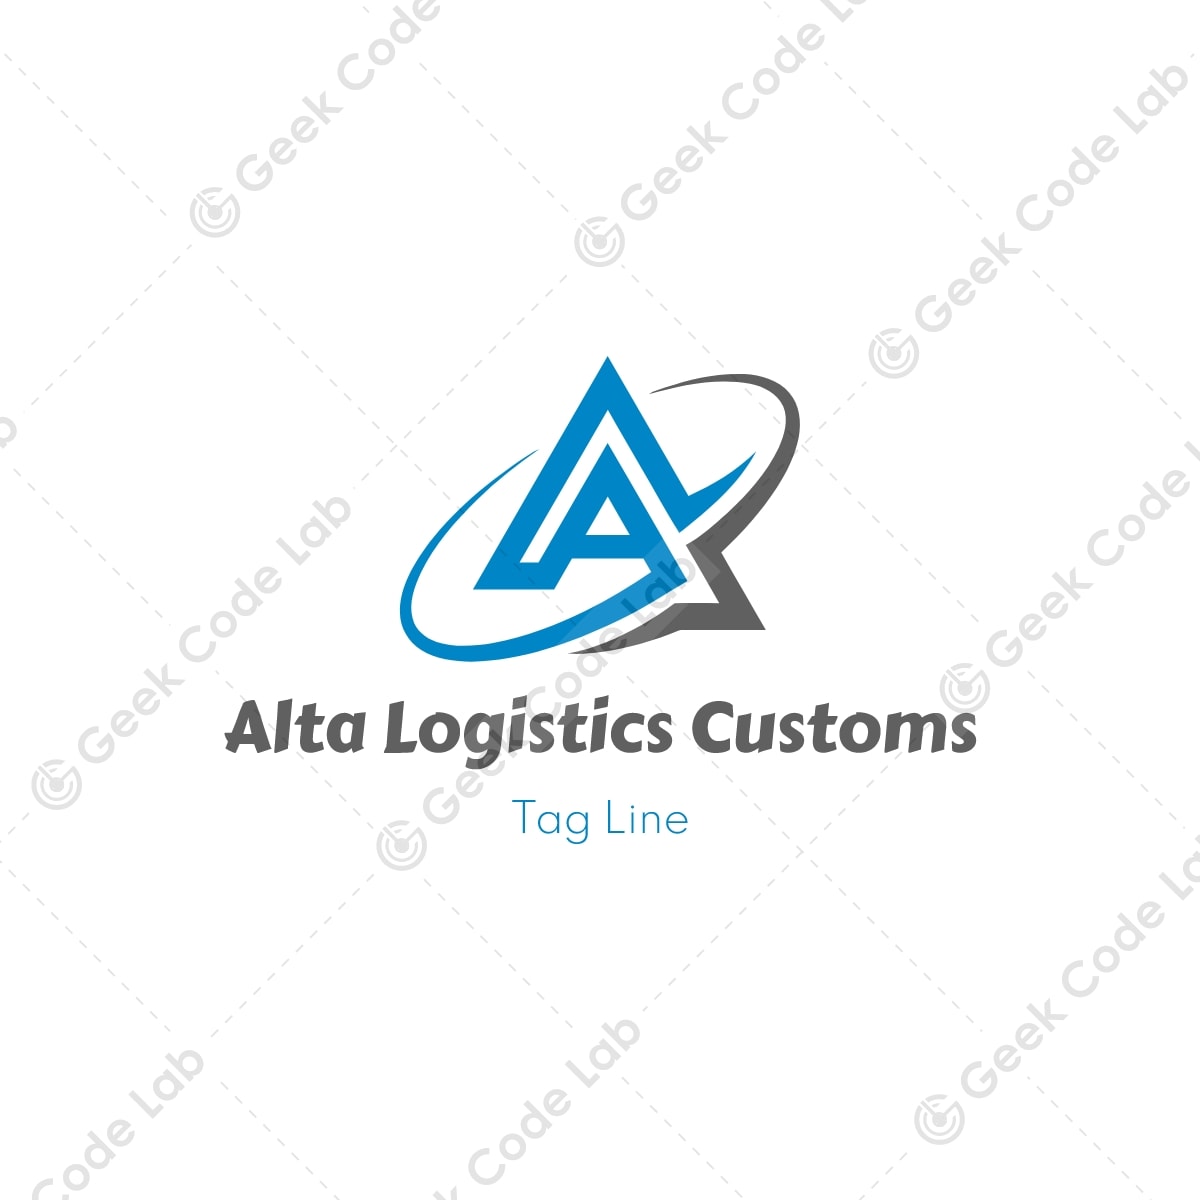 Alta Logistics Customs